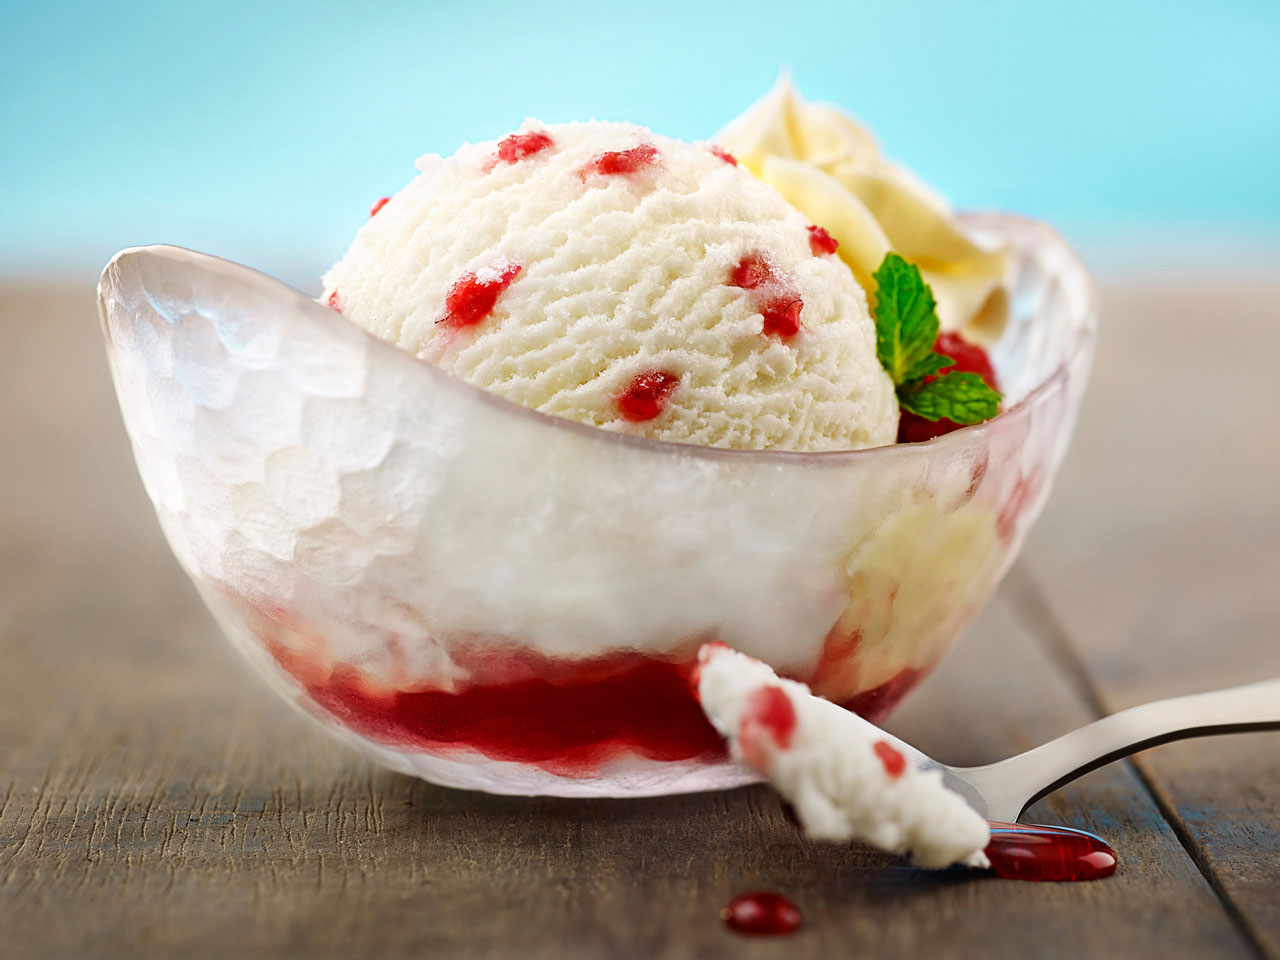 046_F082_raspberry_ice_cream